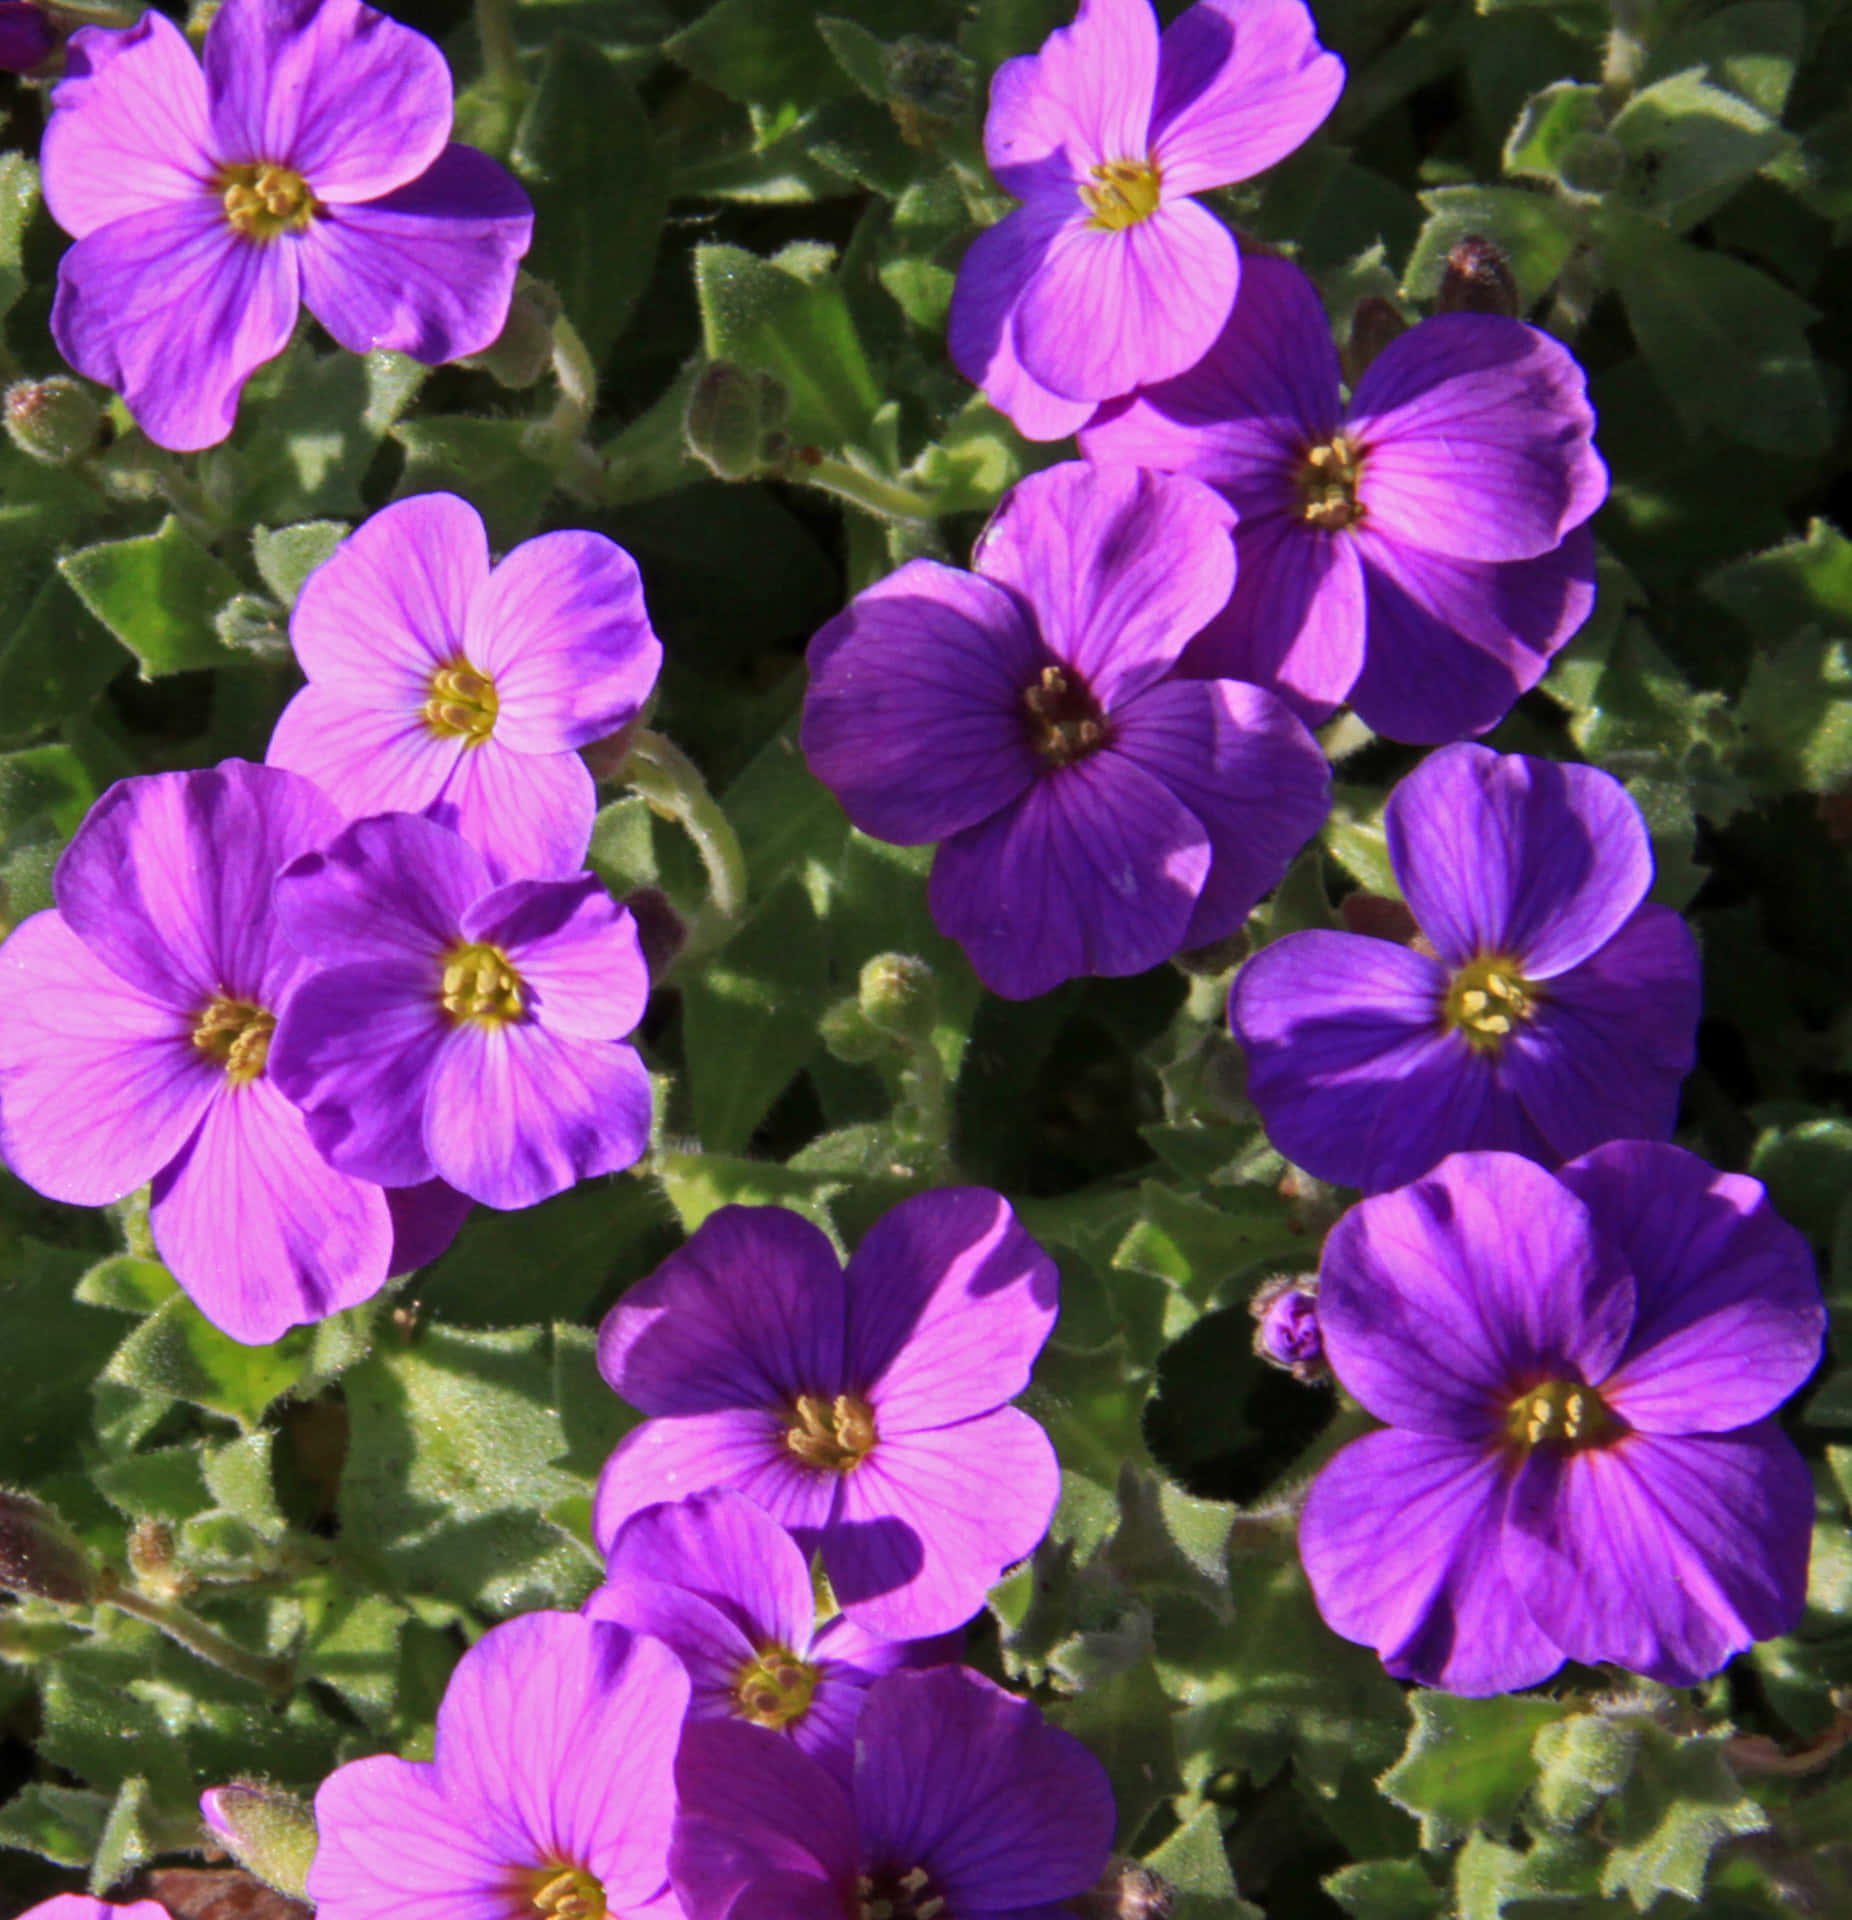 "A Delicate Purple Flower in Full Bloom"